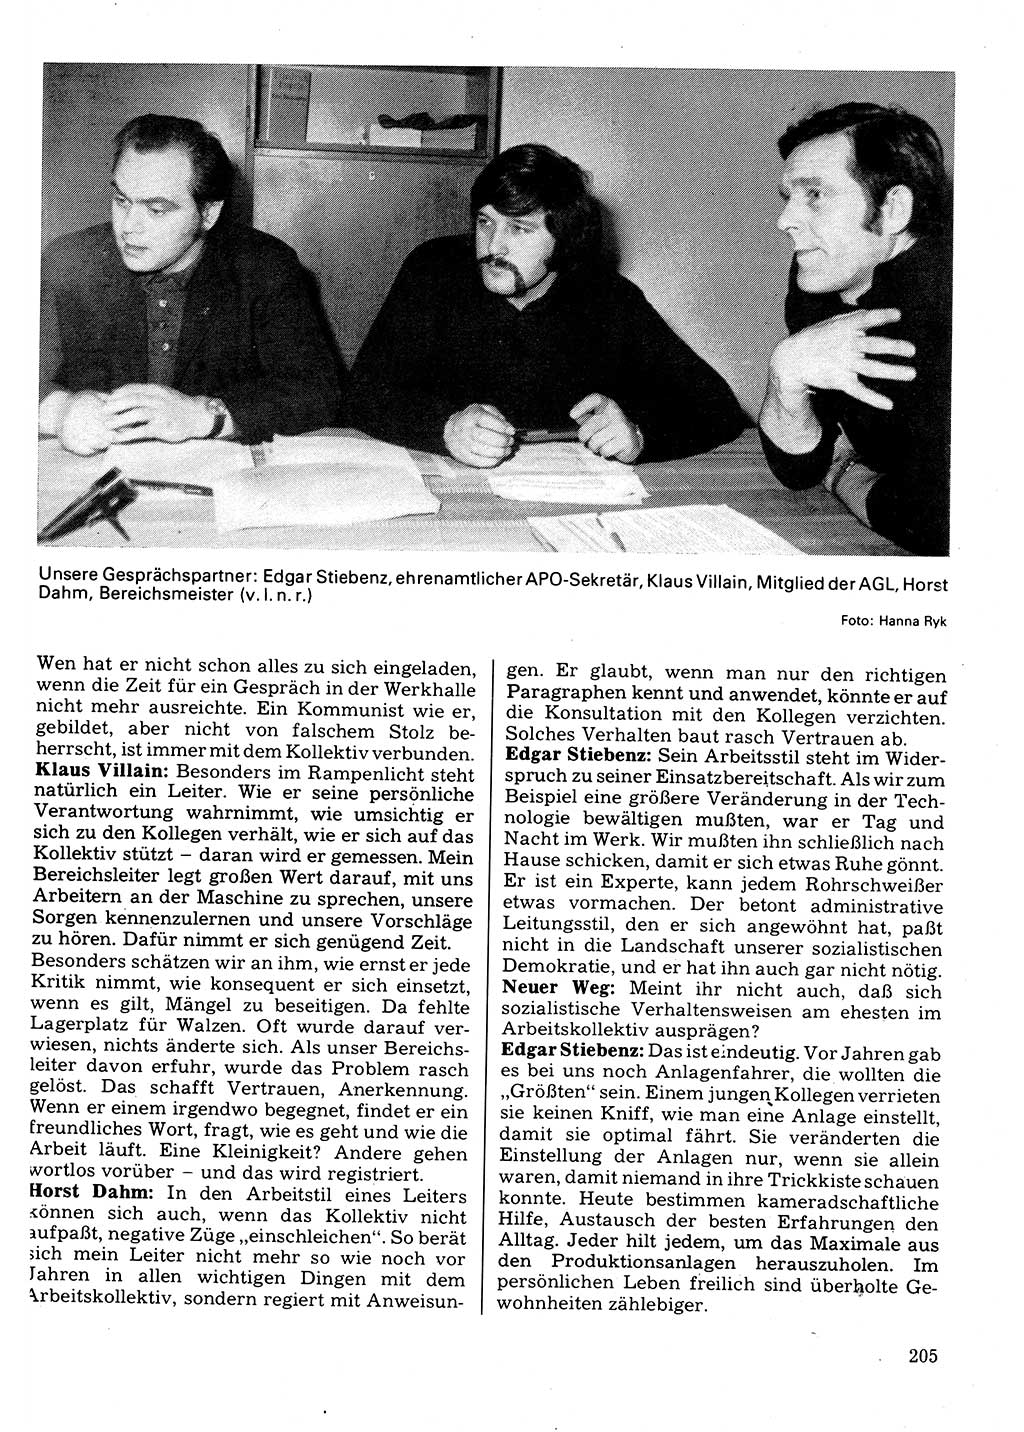 Neuer Weg (NW), Organ des Zentralkomitees (ZK) der SED (Sozialistische Einheitspartei Deutschlands) für Fragen des Parteilebens, 32. Jahrgang [Deutsche Demokratische Republik (DDR)] 1977, Seite 205 (NW ZK SED DDR 1977, S. 205)